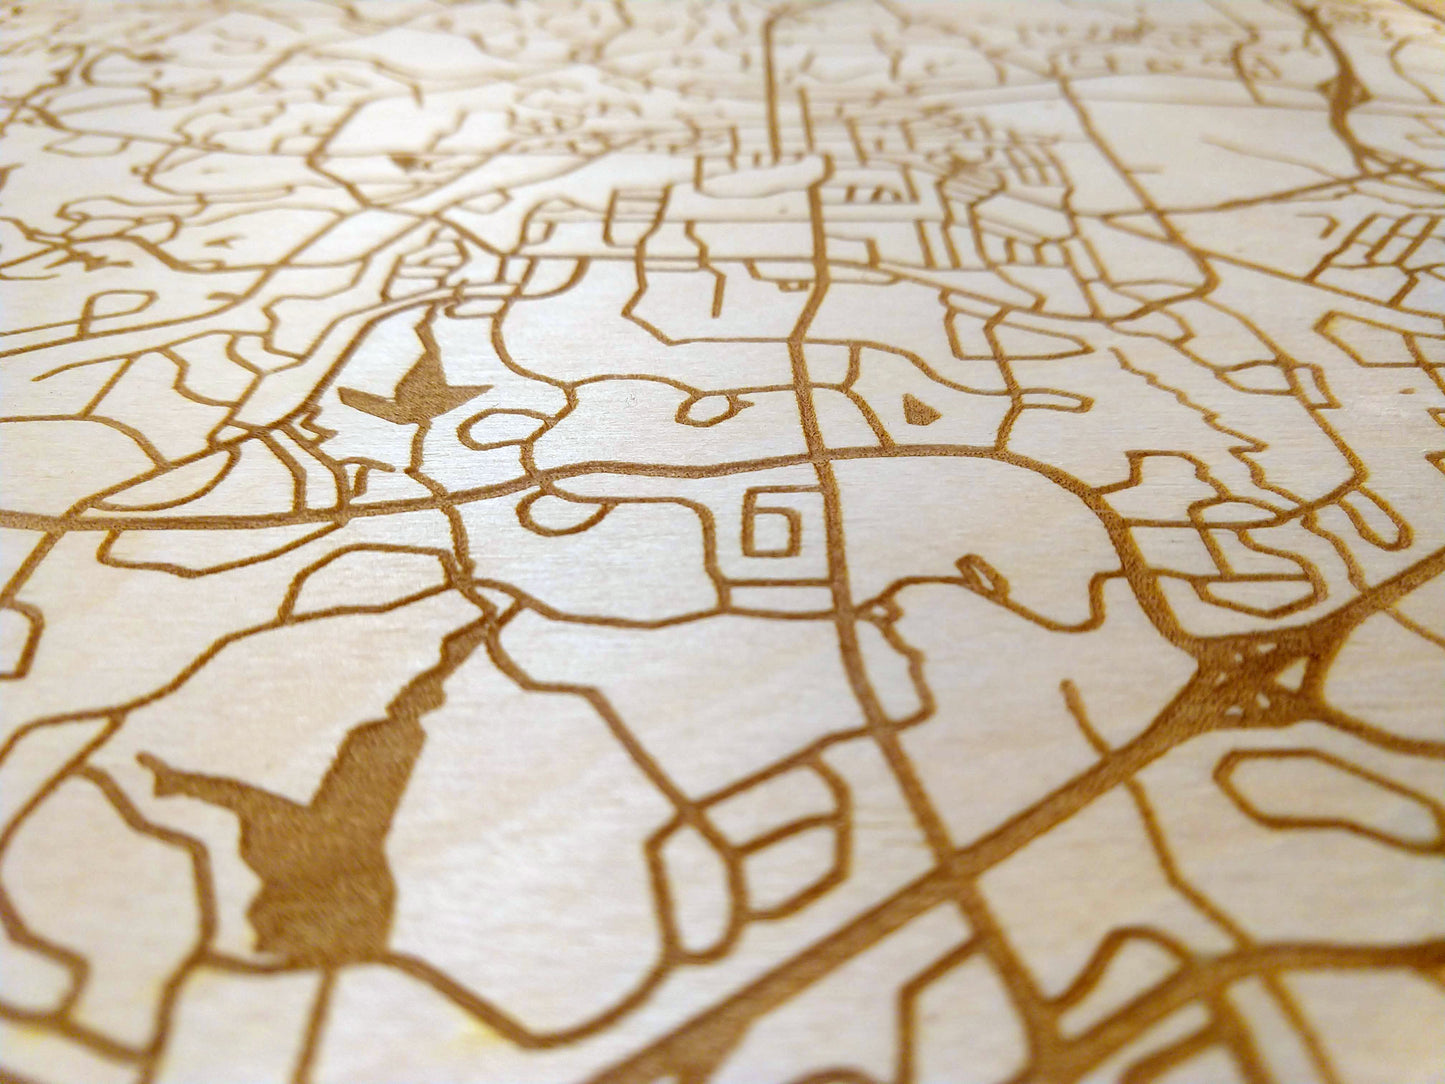 Custom Any City 12x12" Rustic Wood Map